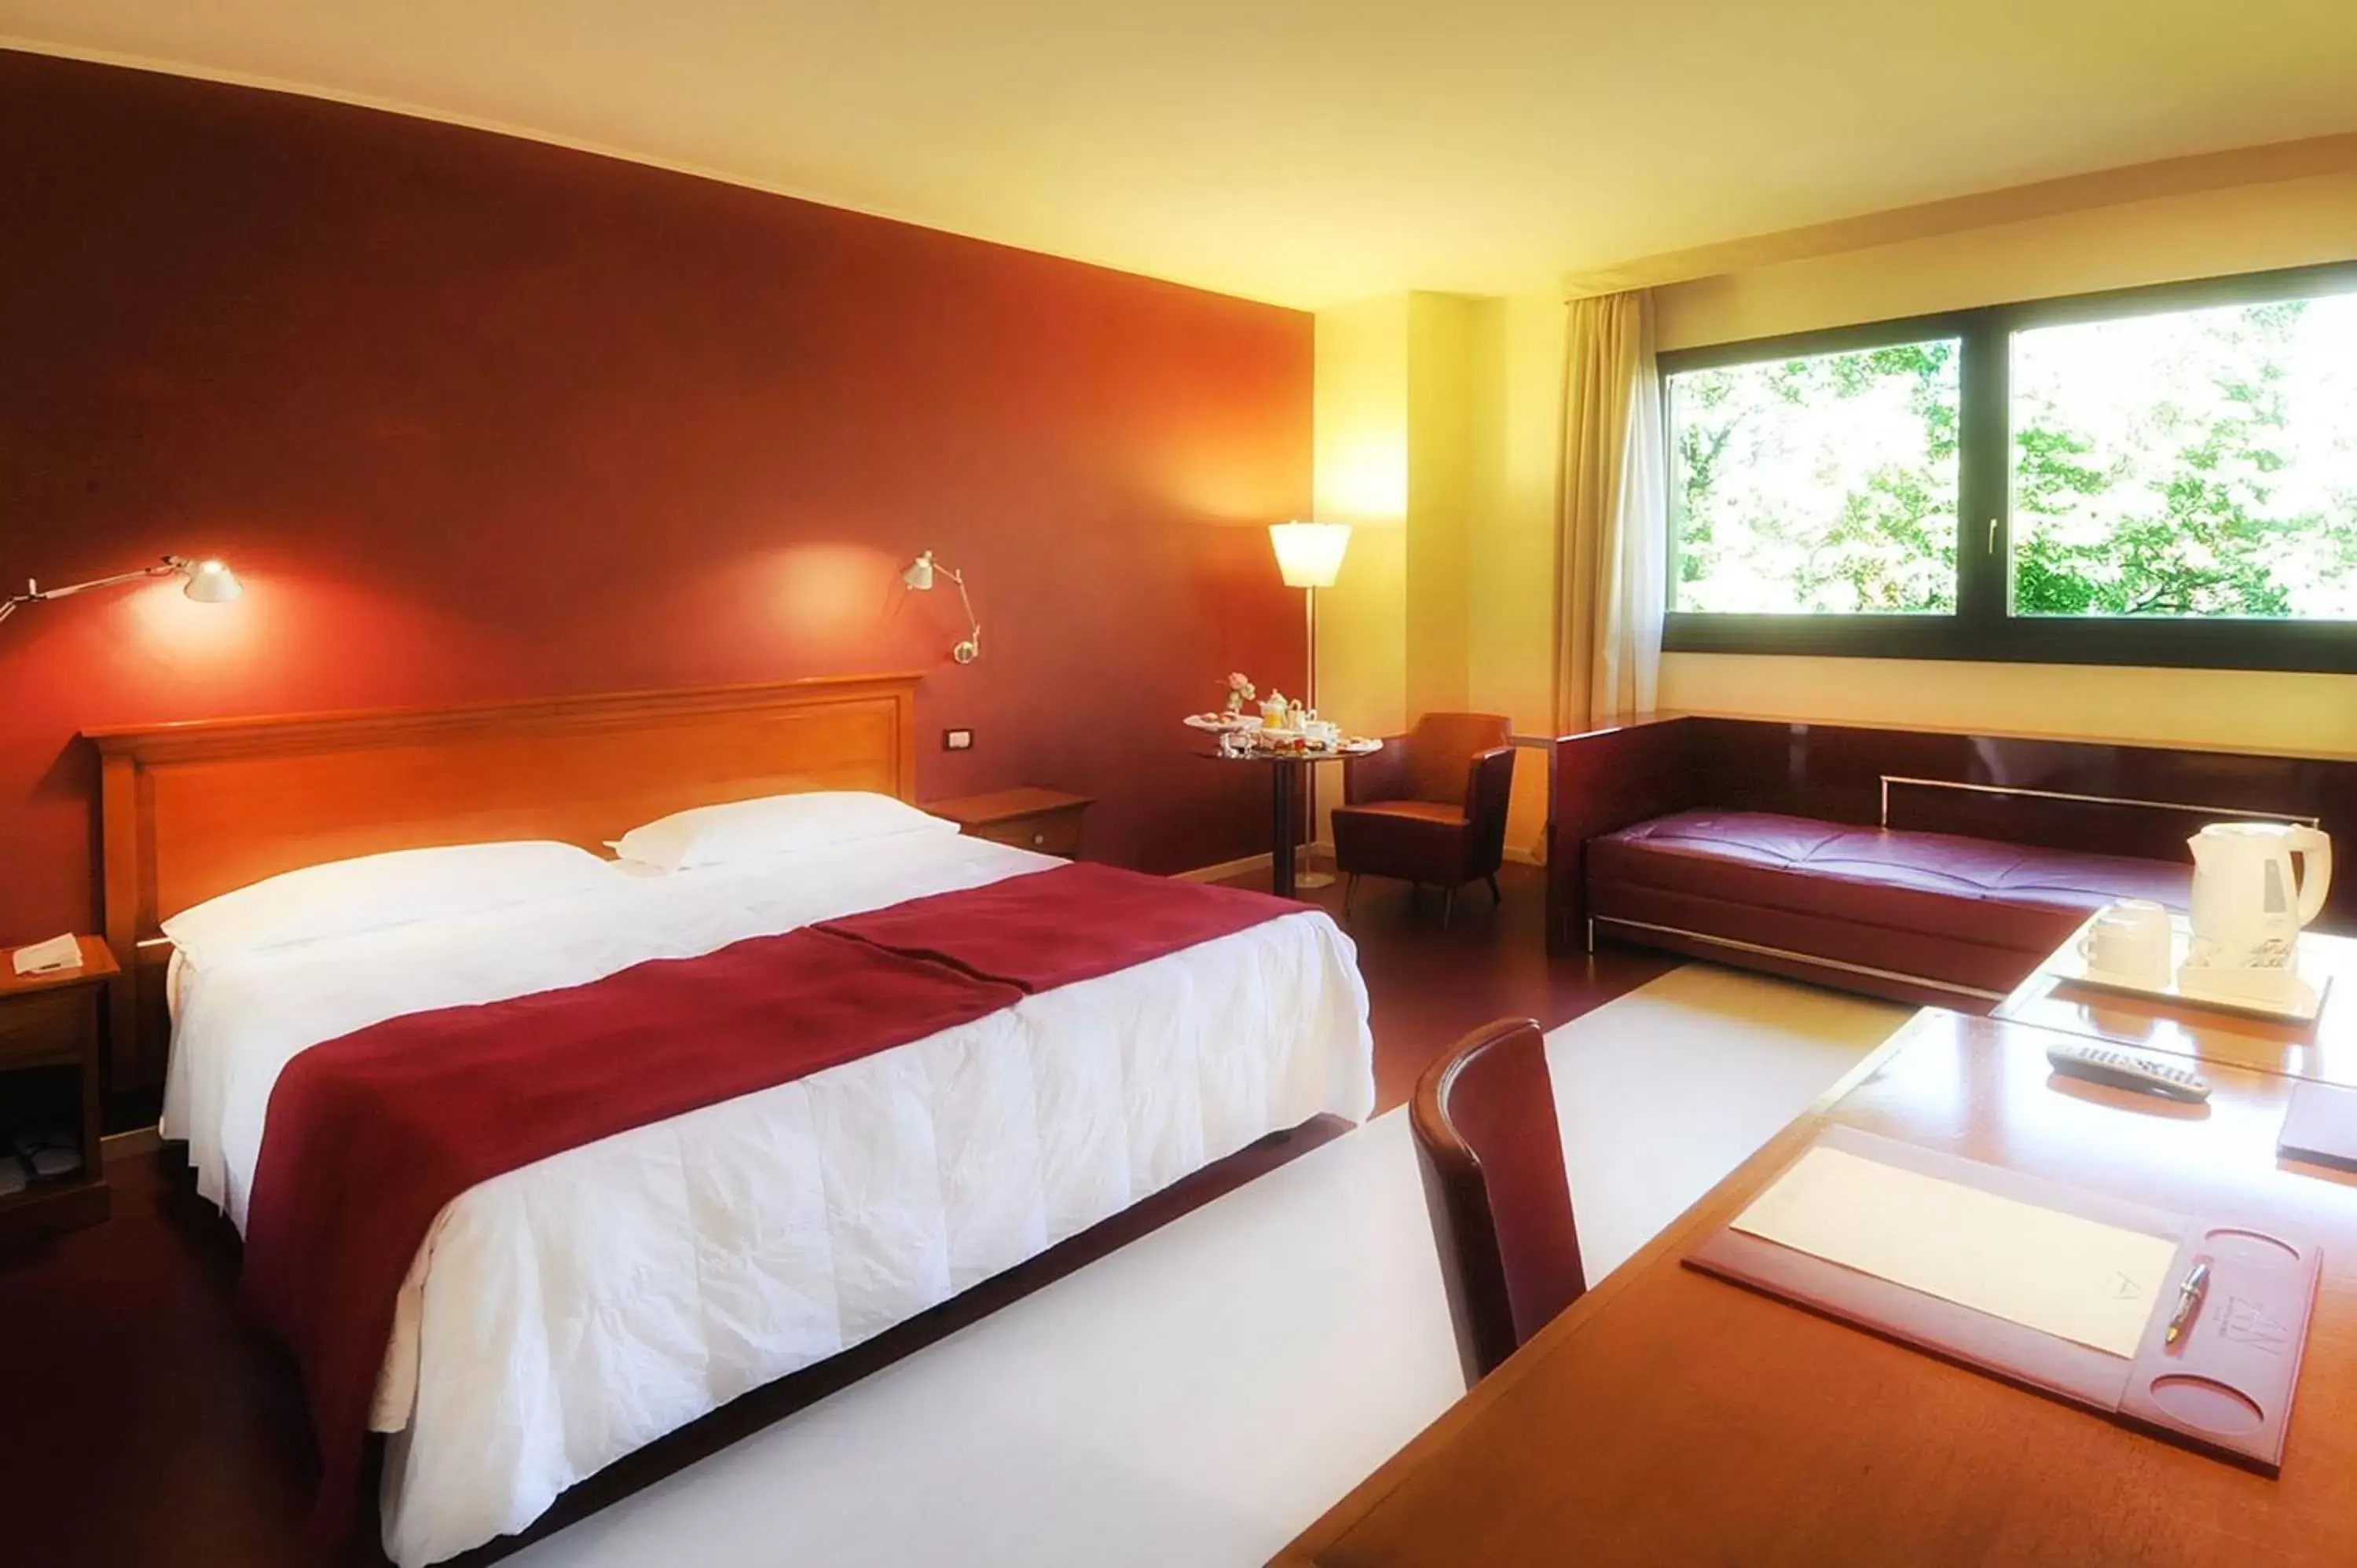 Bedroom, Bed in Art Hotel Navigli